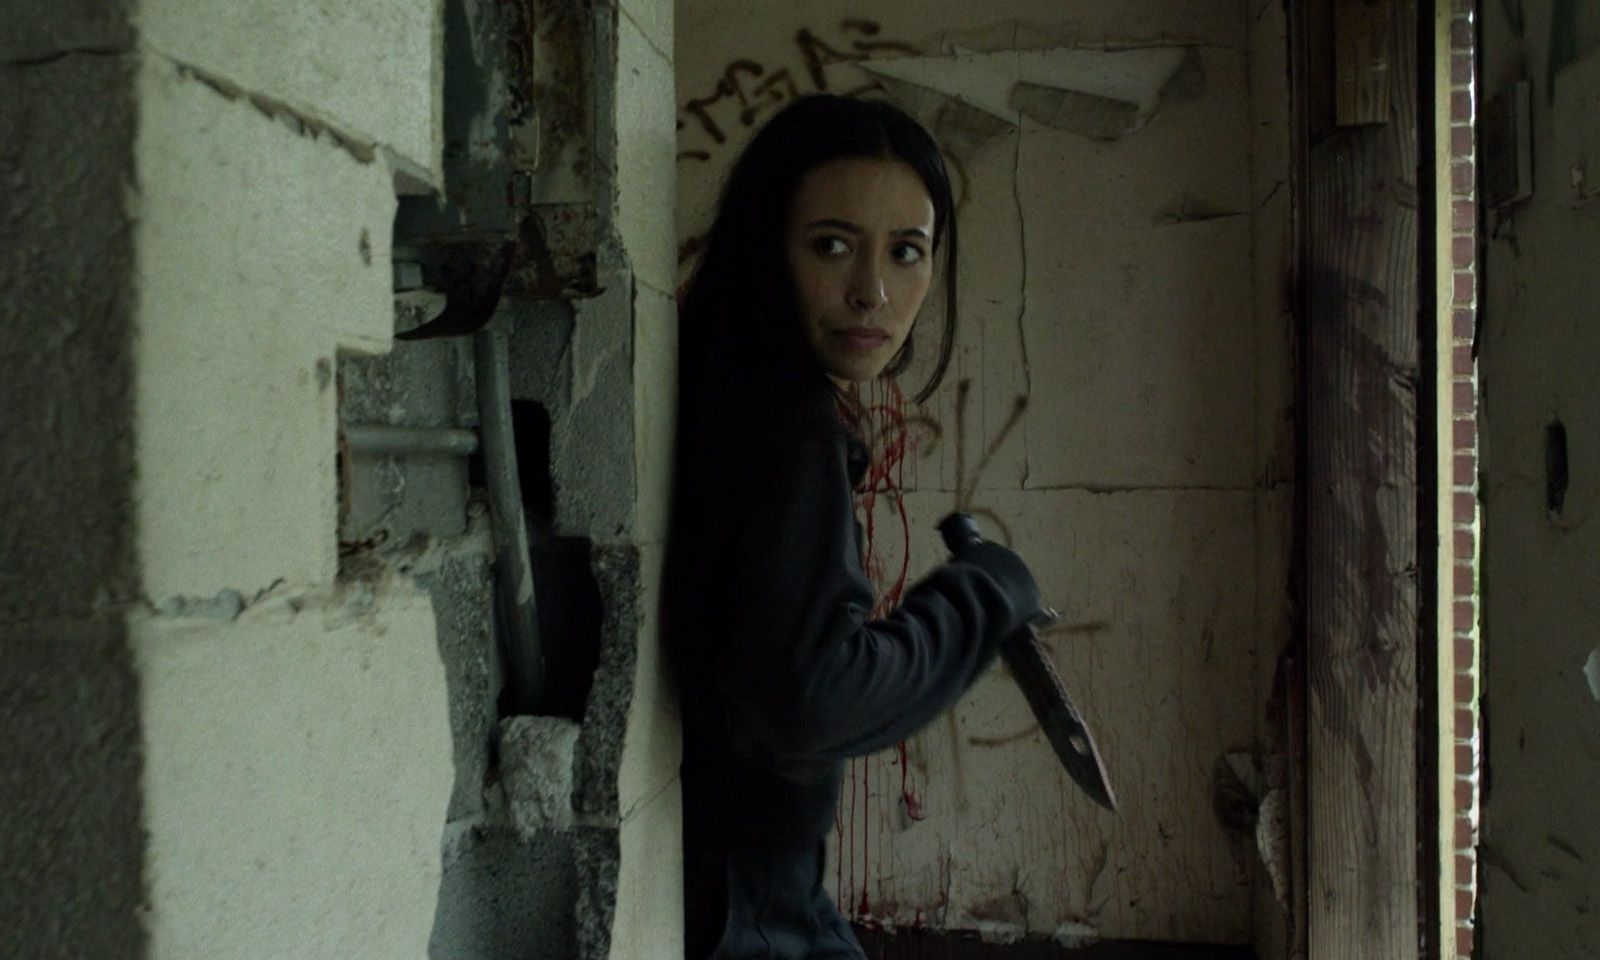 Rosita segurando uma faca pronta pra atacar em cena do episódio 10 da 11ª temporada de The Walking Dead.